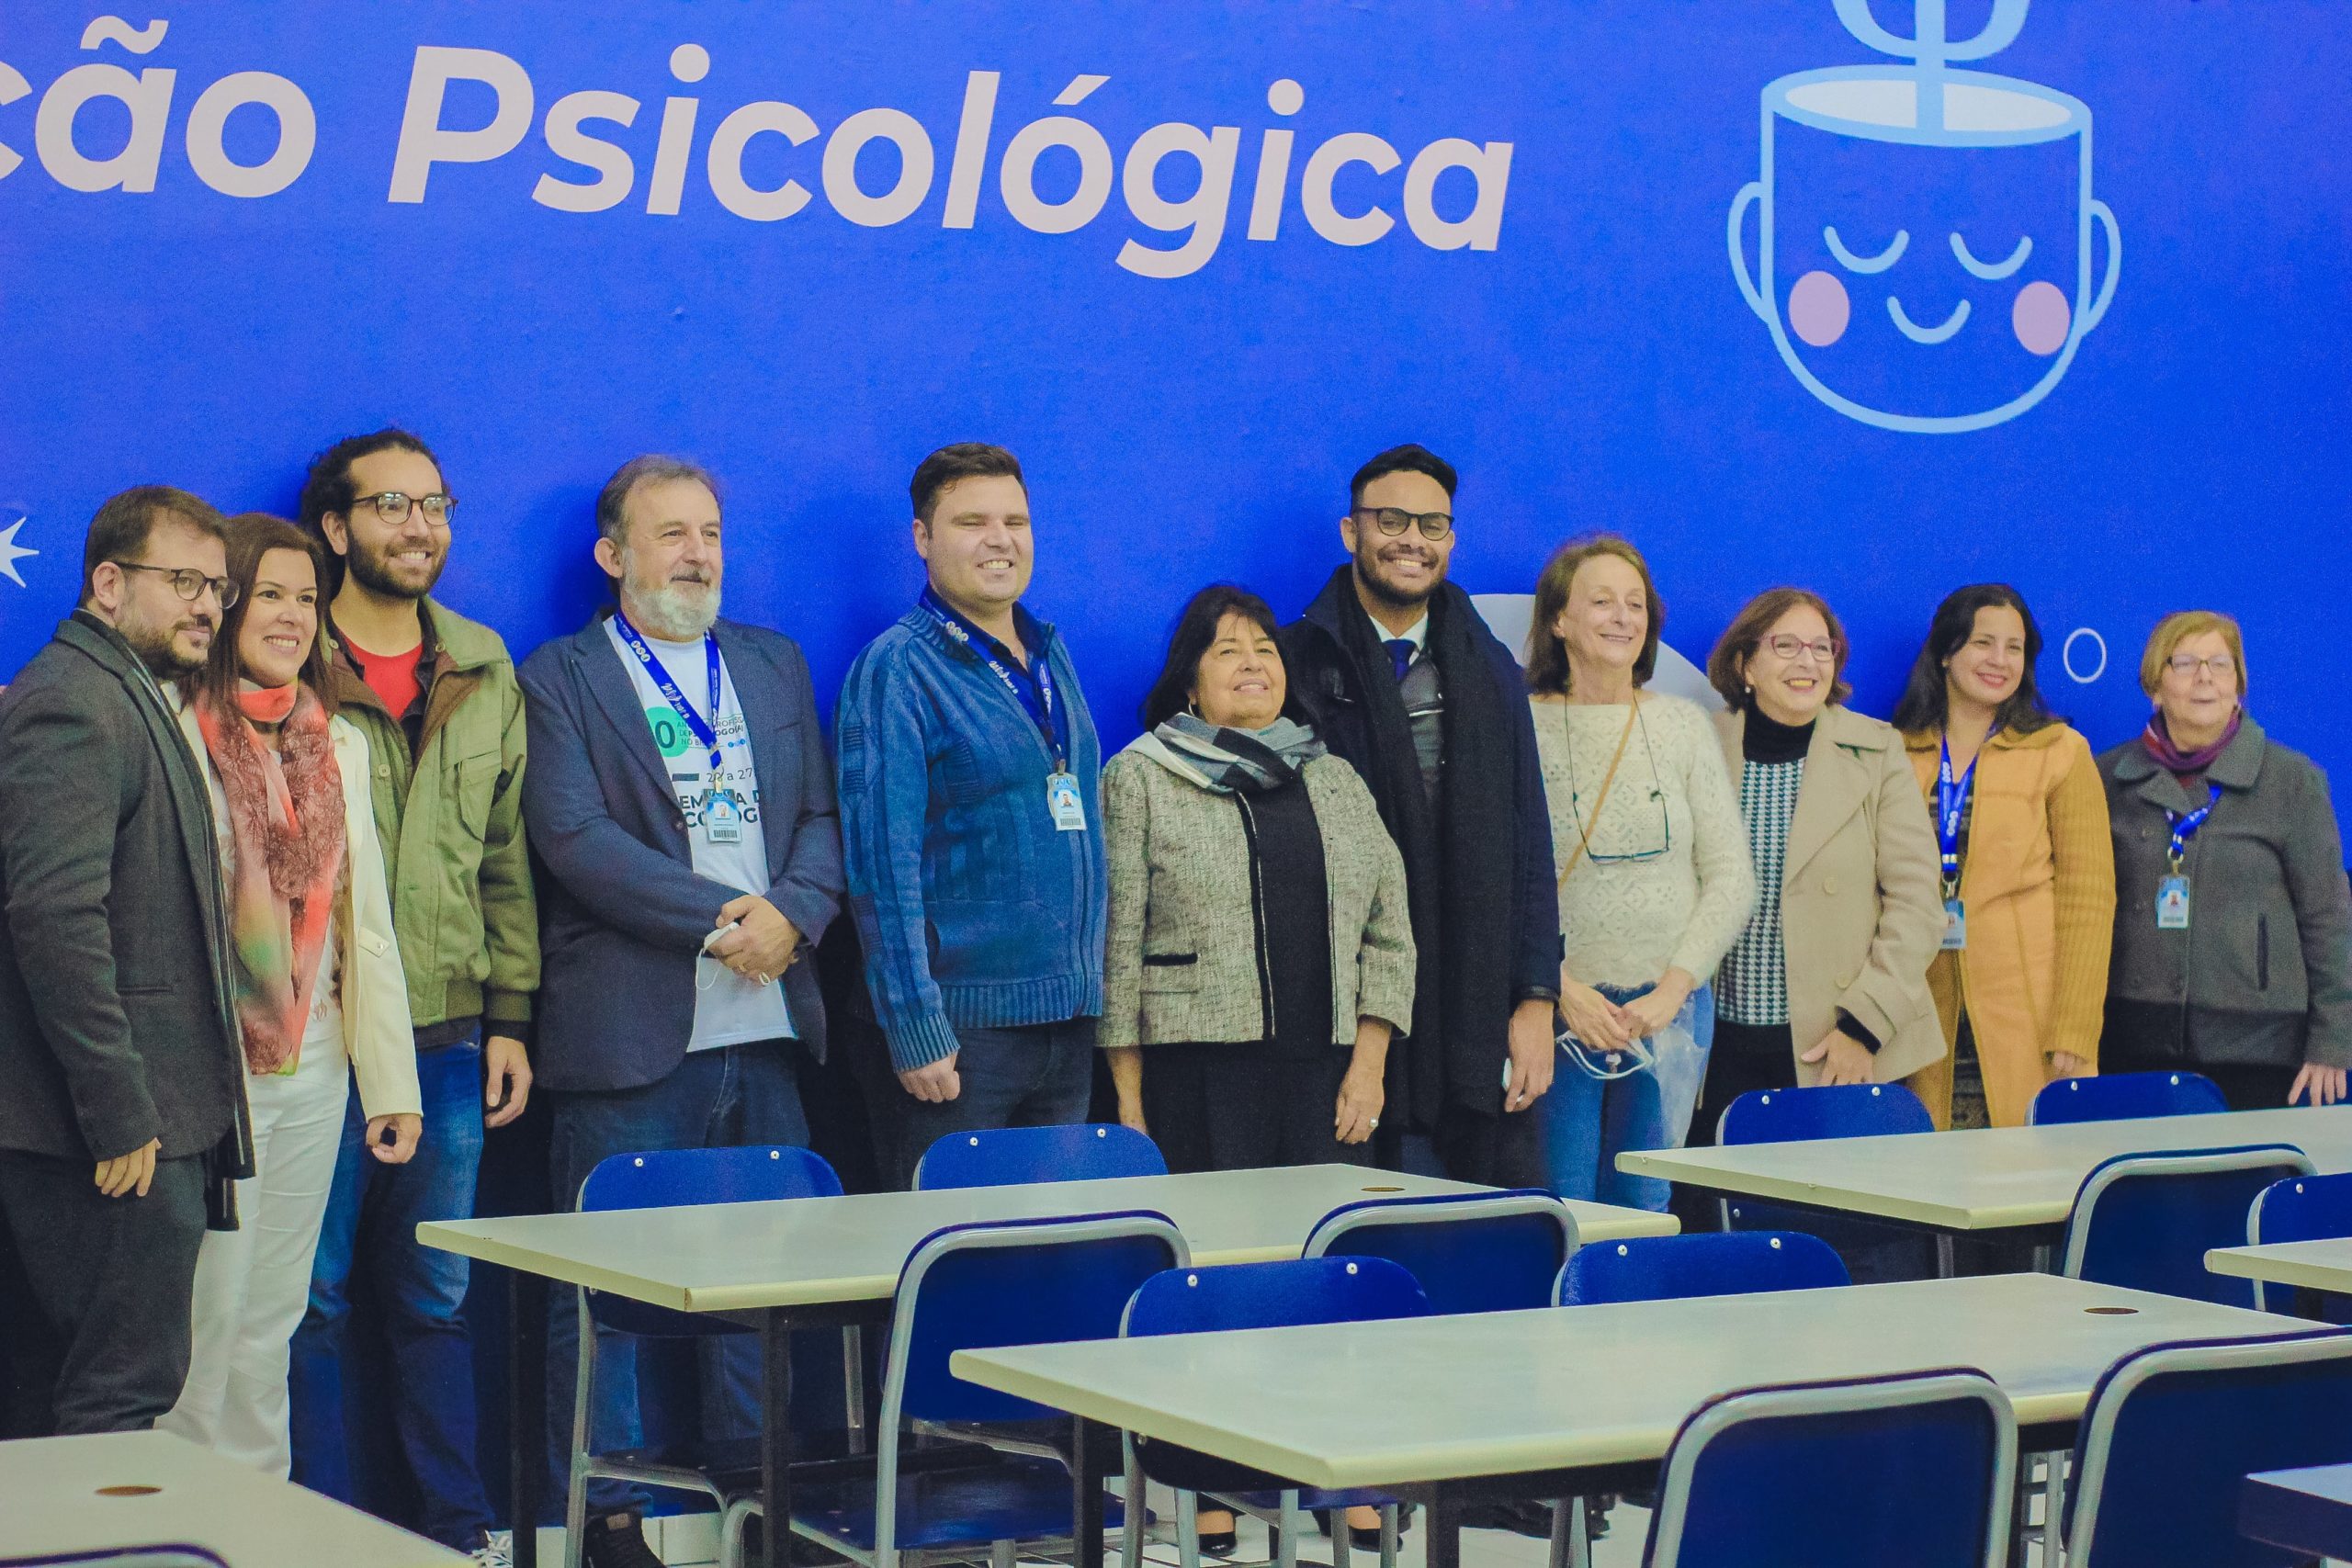 Fundação Santo André inaugura Laboratório de Avaliação Psicológica